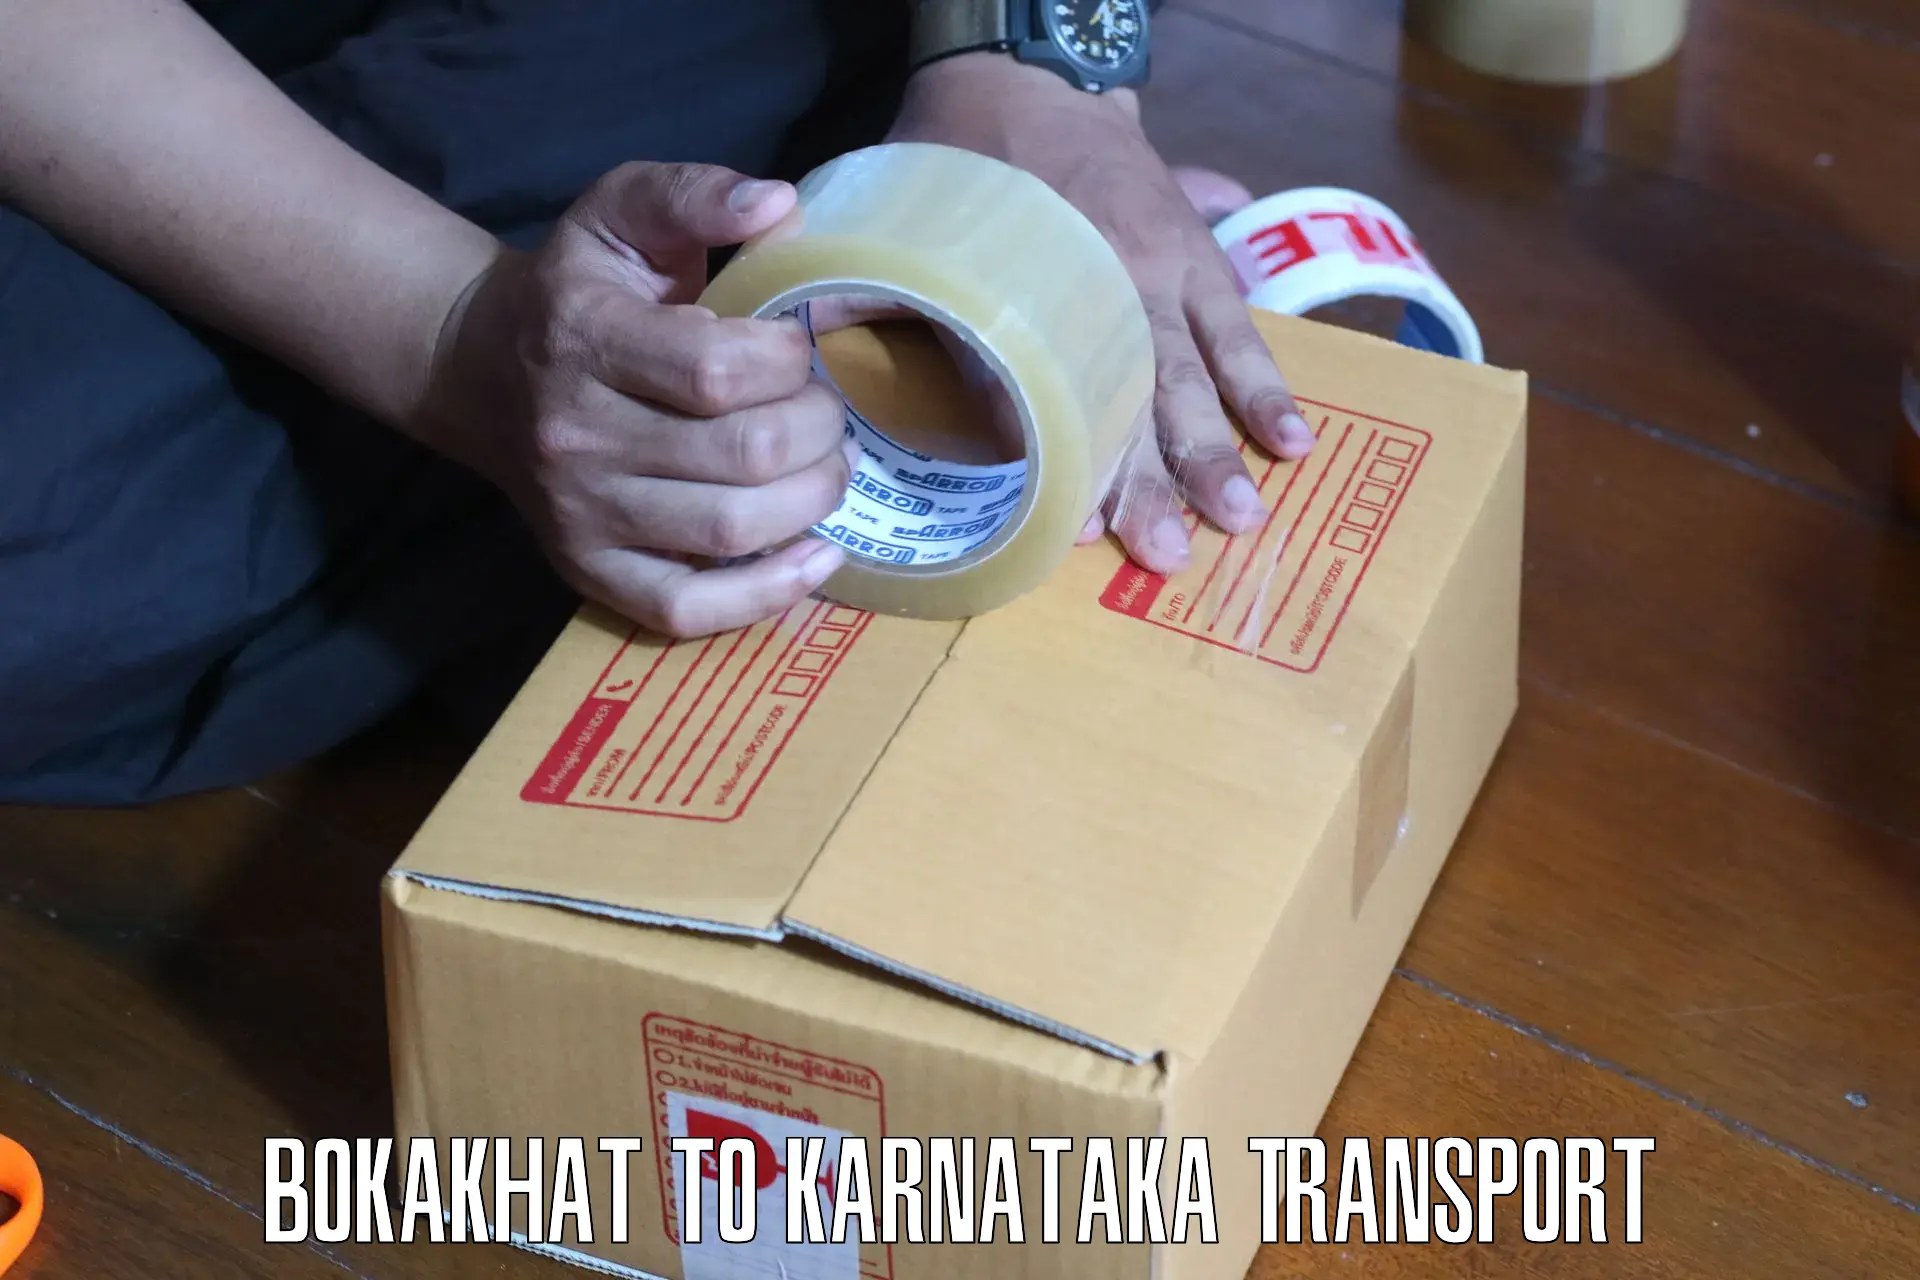 Two wheeler parcel service Bokakhat to Gulbarga